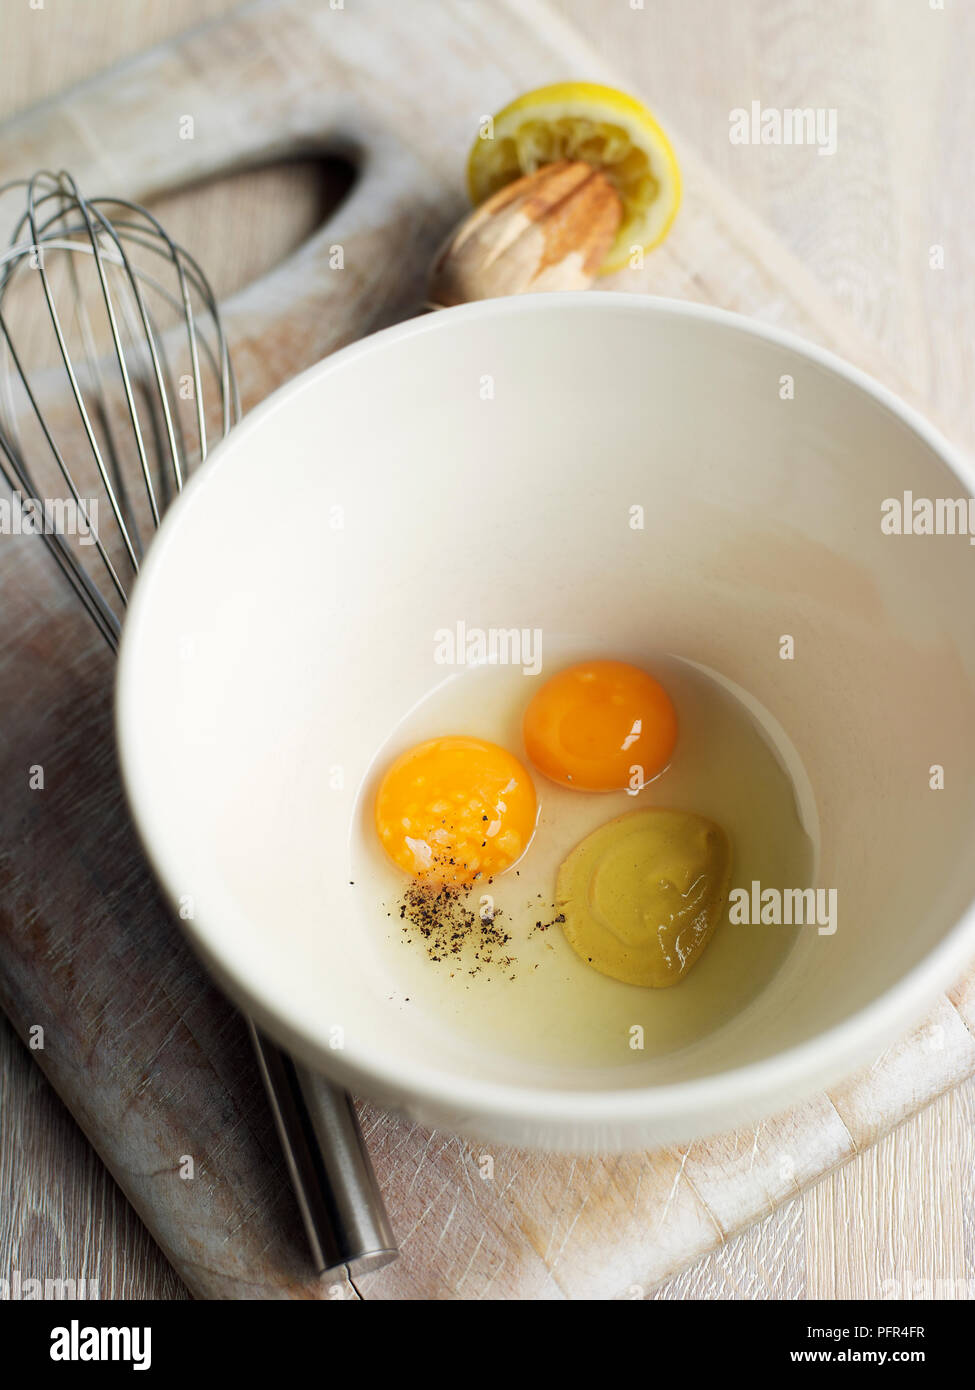 Uova, la senape e il succo di limone in un recipiente, frusta nelle vicinanze (ingredienti per la maionese) Foto Stock